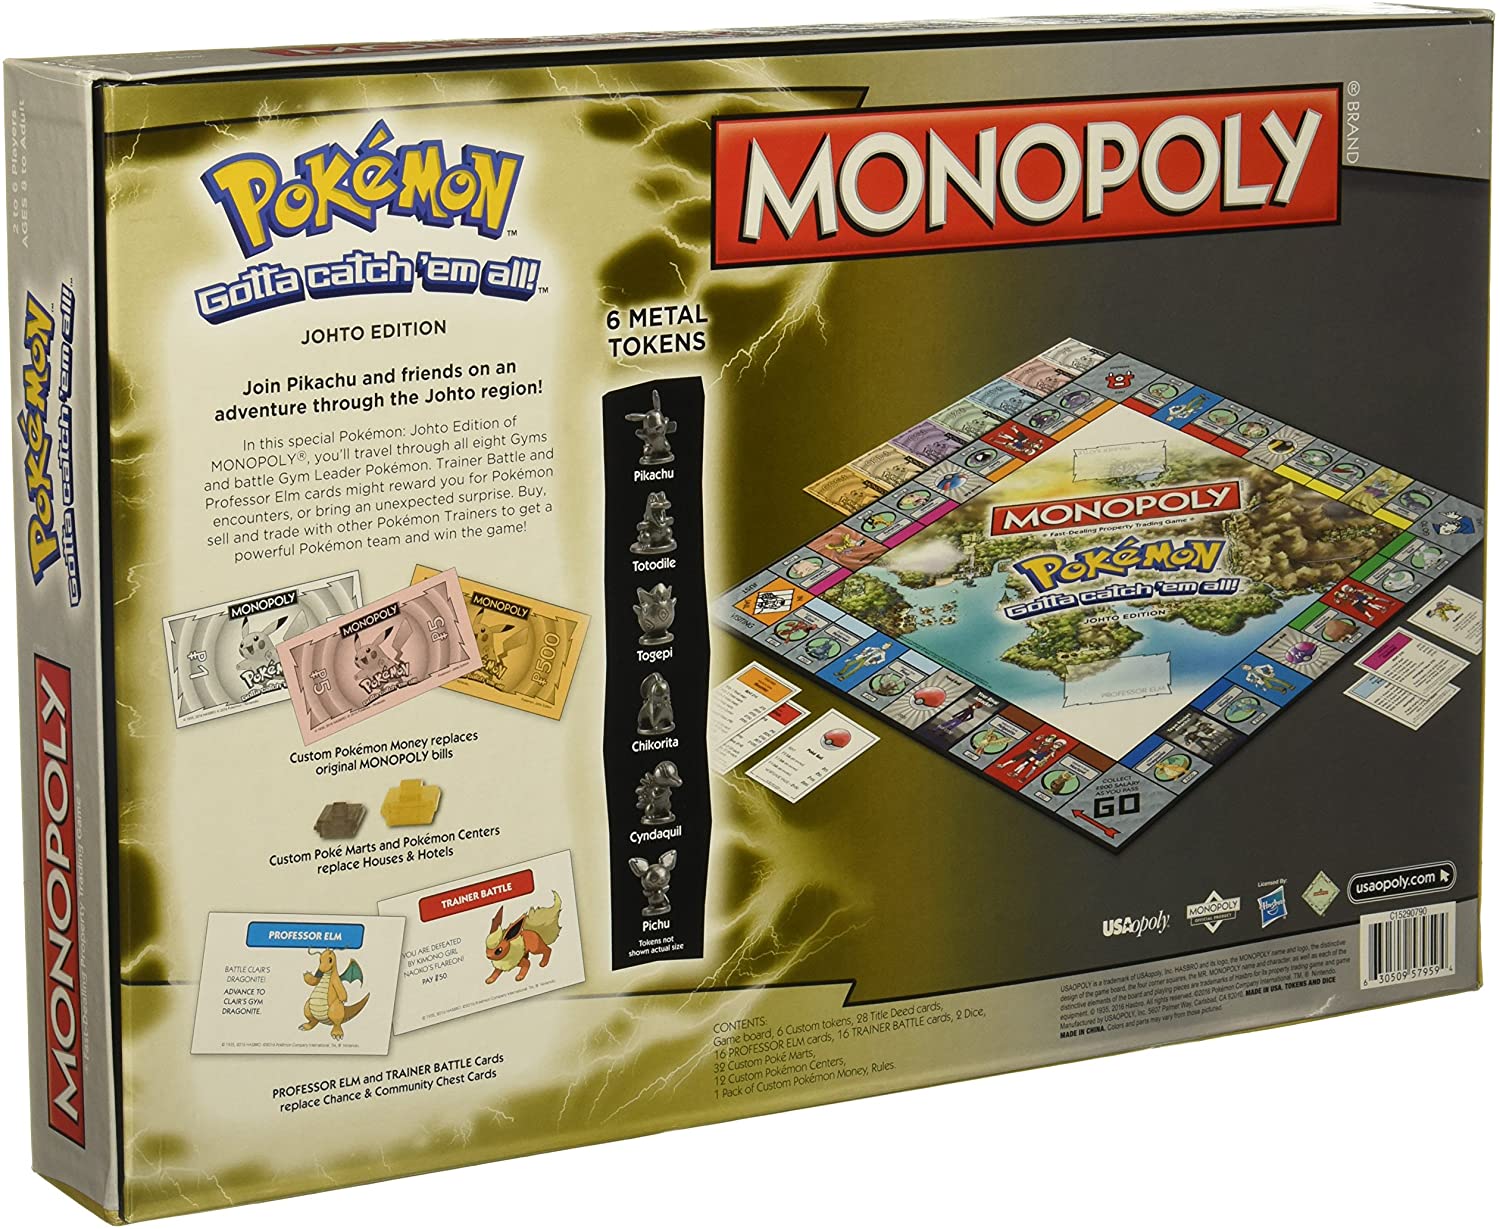 Monopoly: Pokémon Kanto Edition, Image